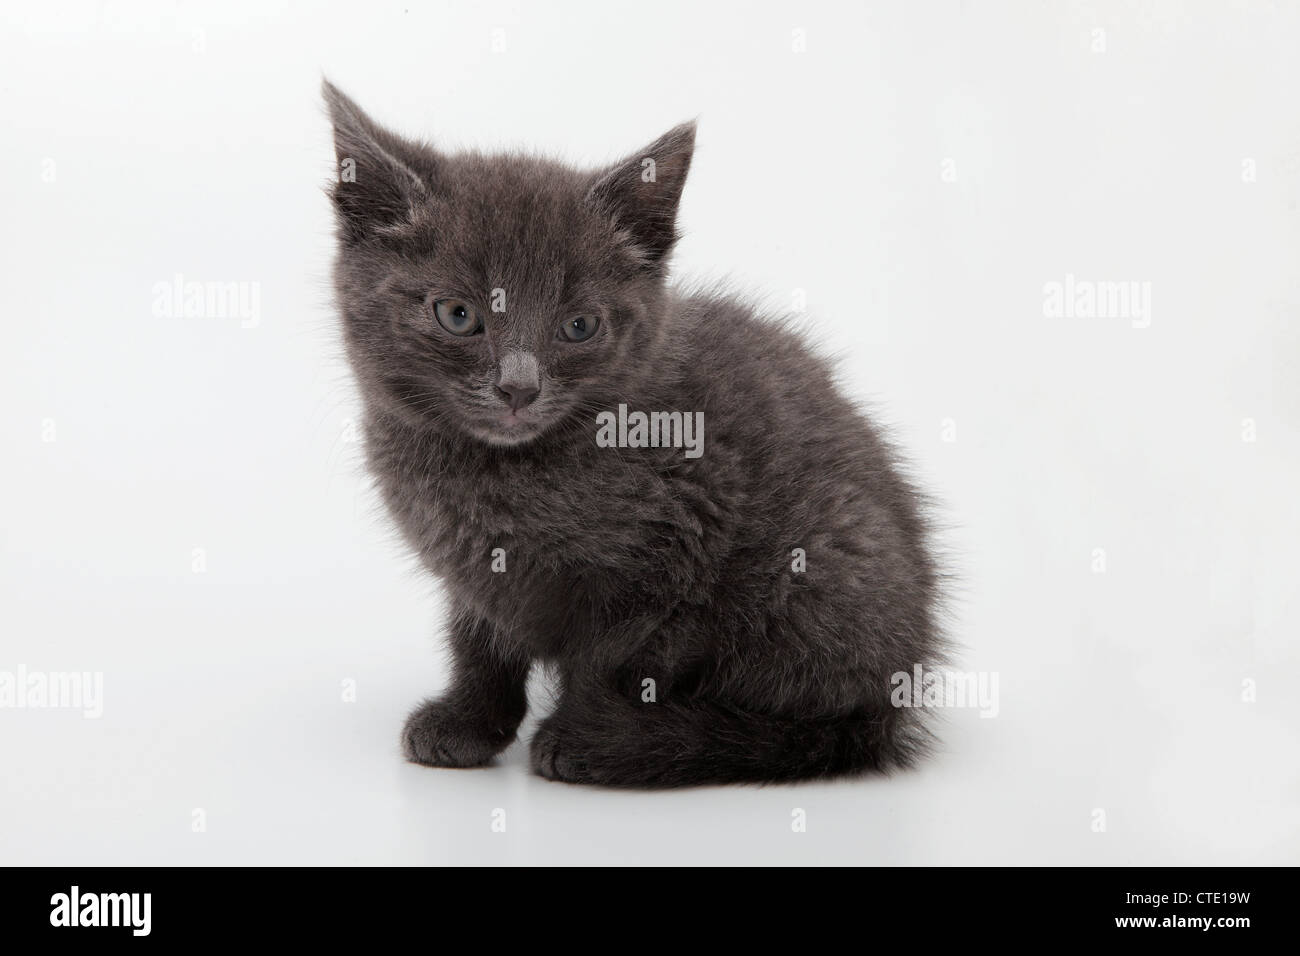 A grey kitten Stock Photo